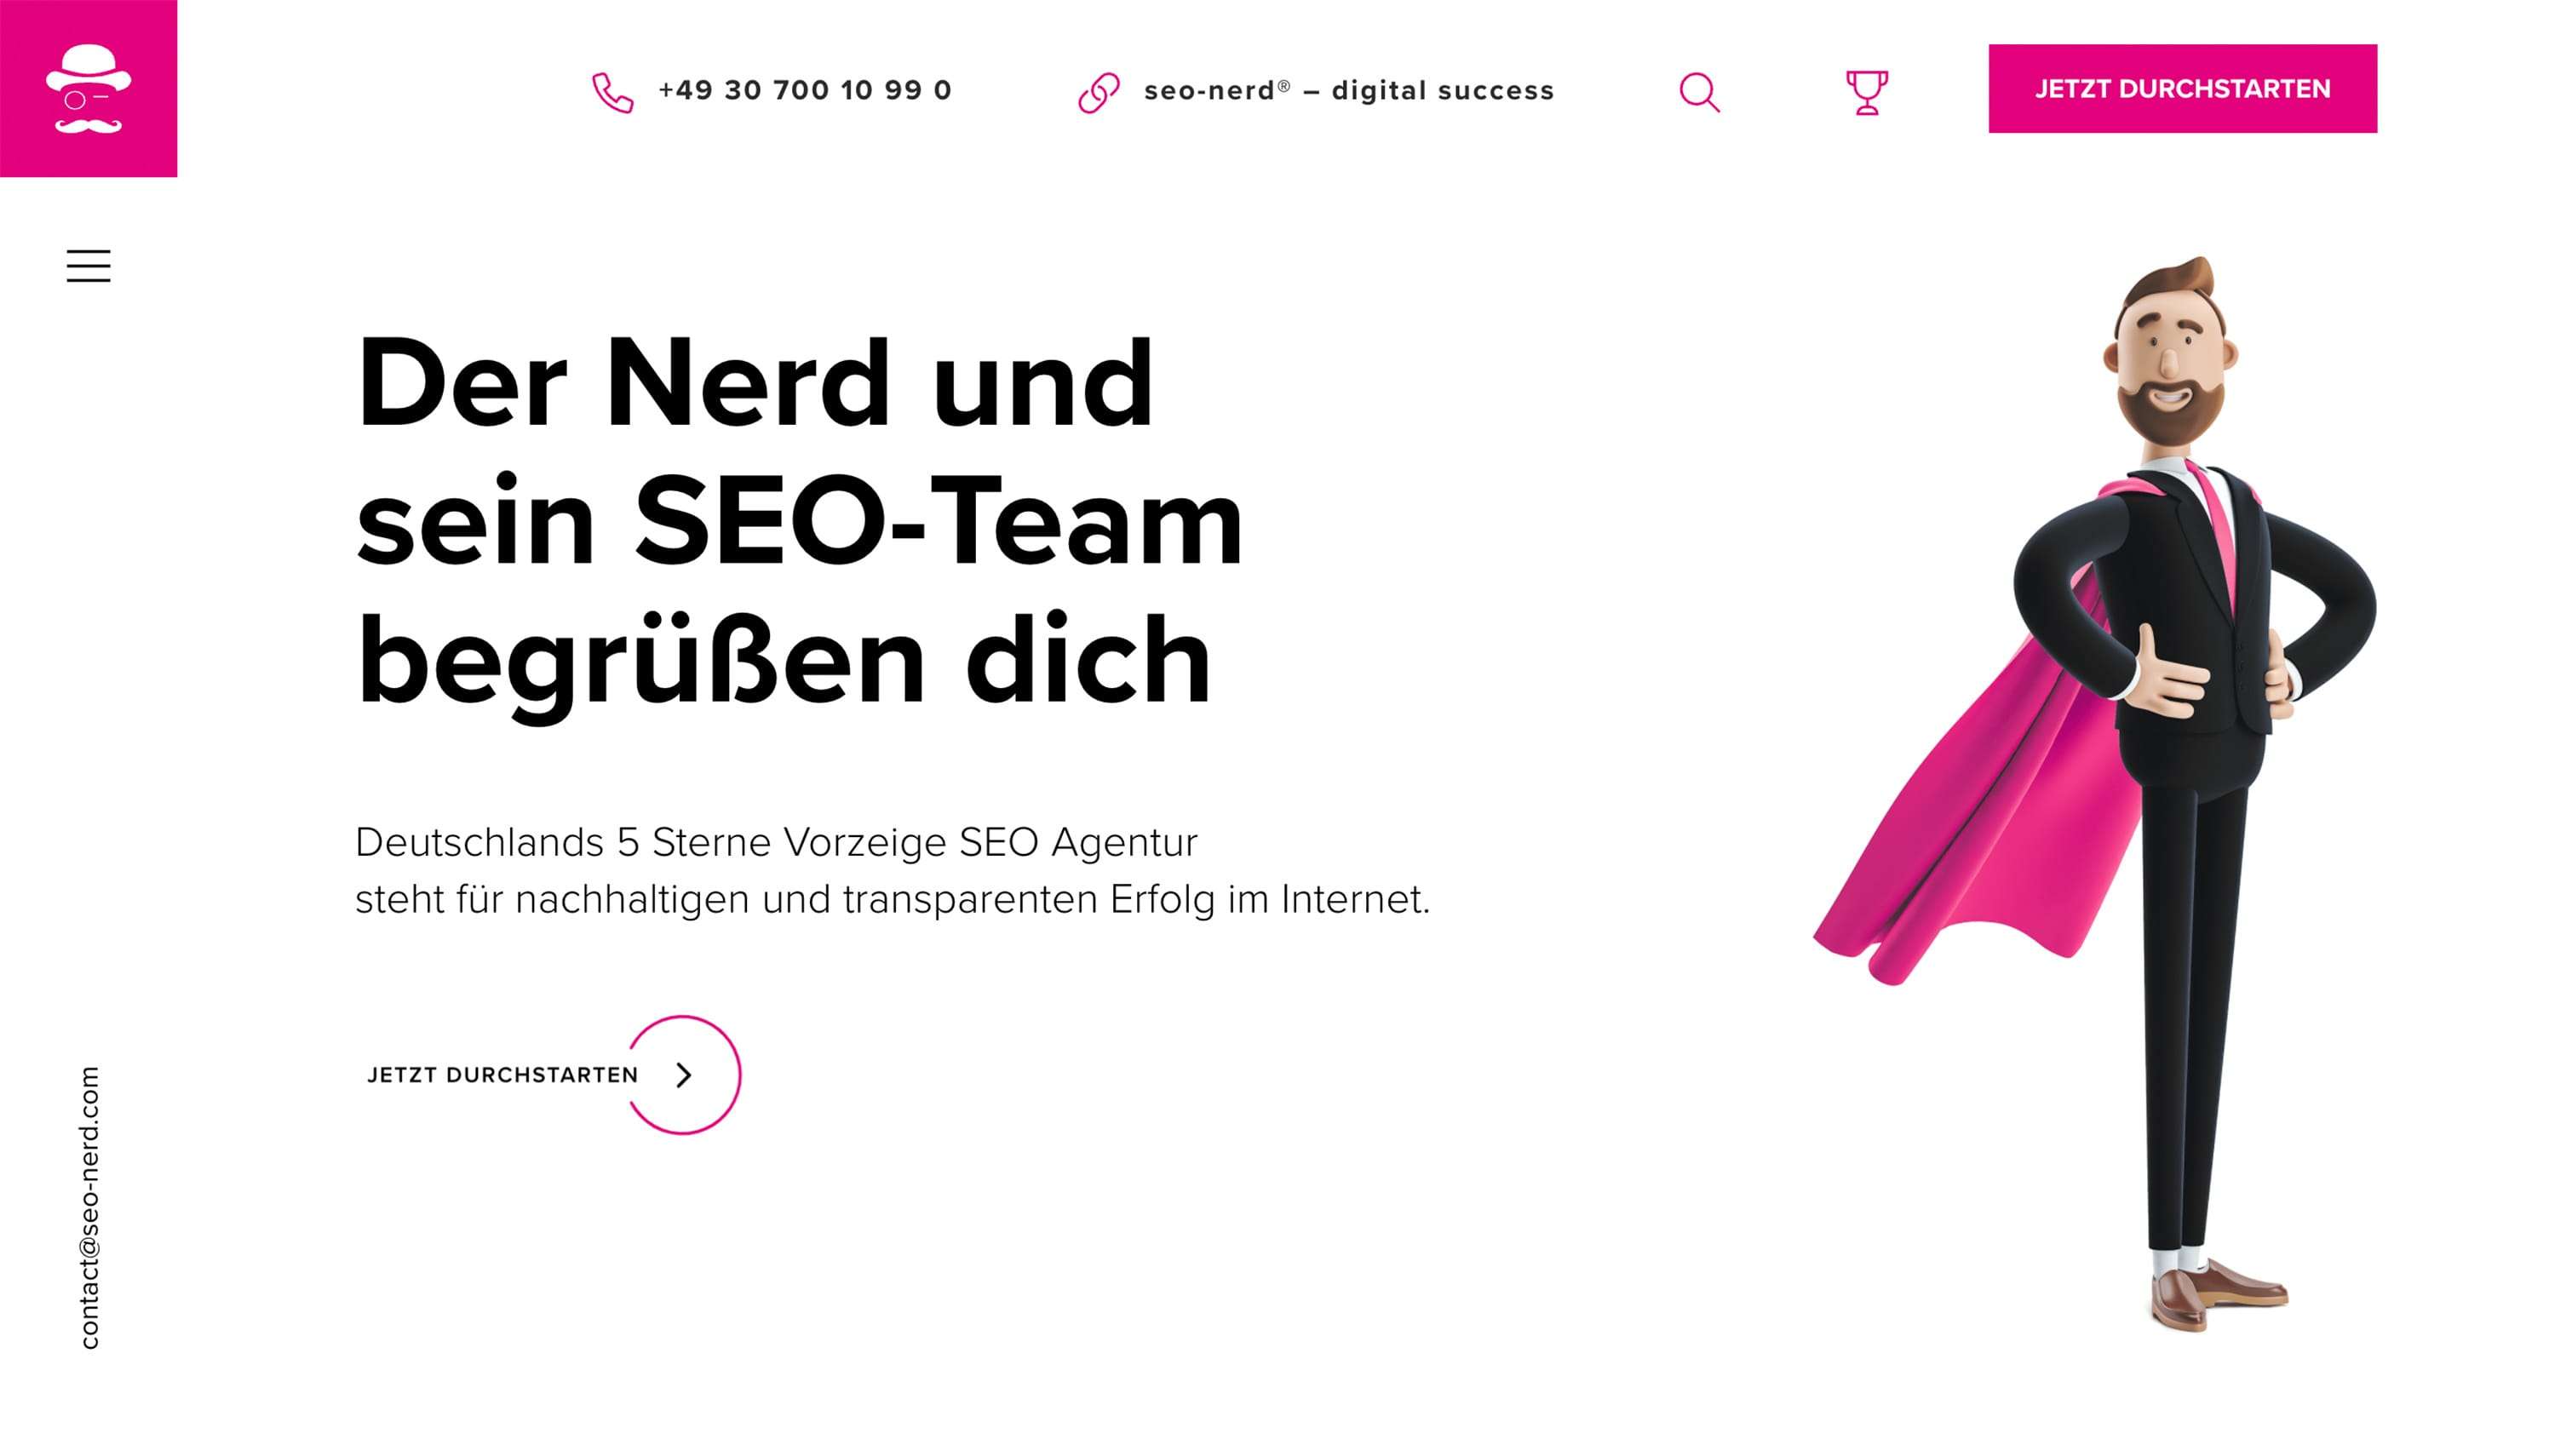 Deutschlands 5 Sterne High-End SEO Agentur steht für nachhaltigen und transparenten Erfolg im Internet.